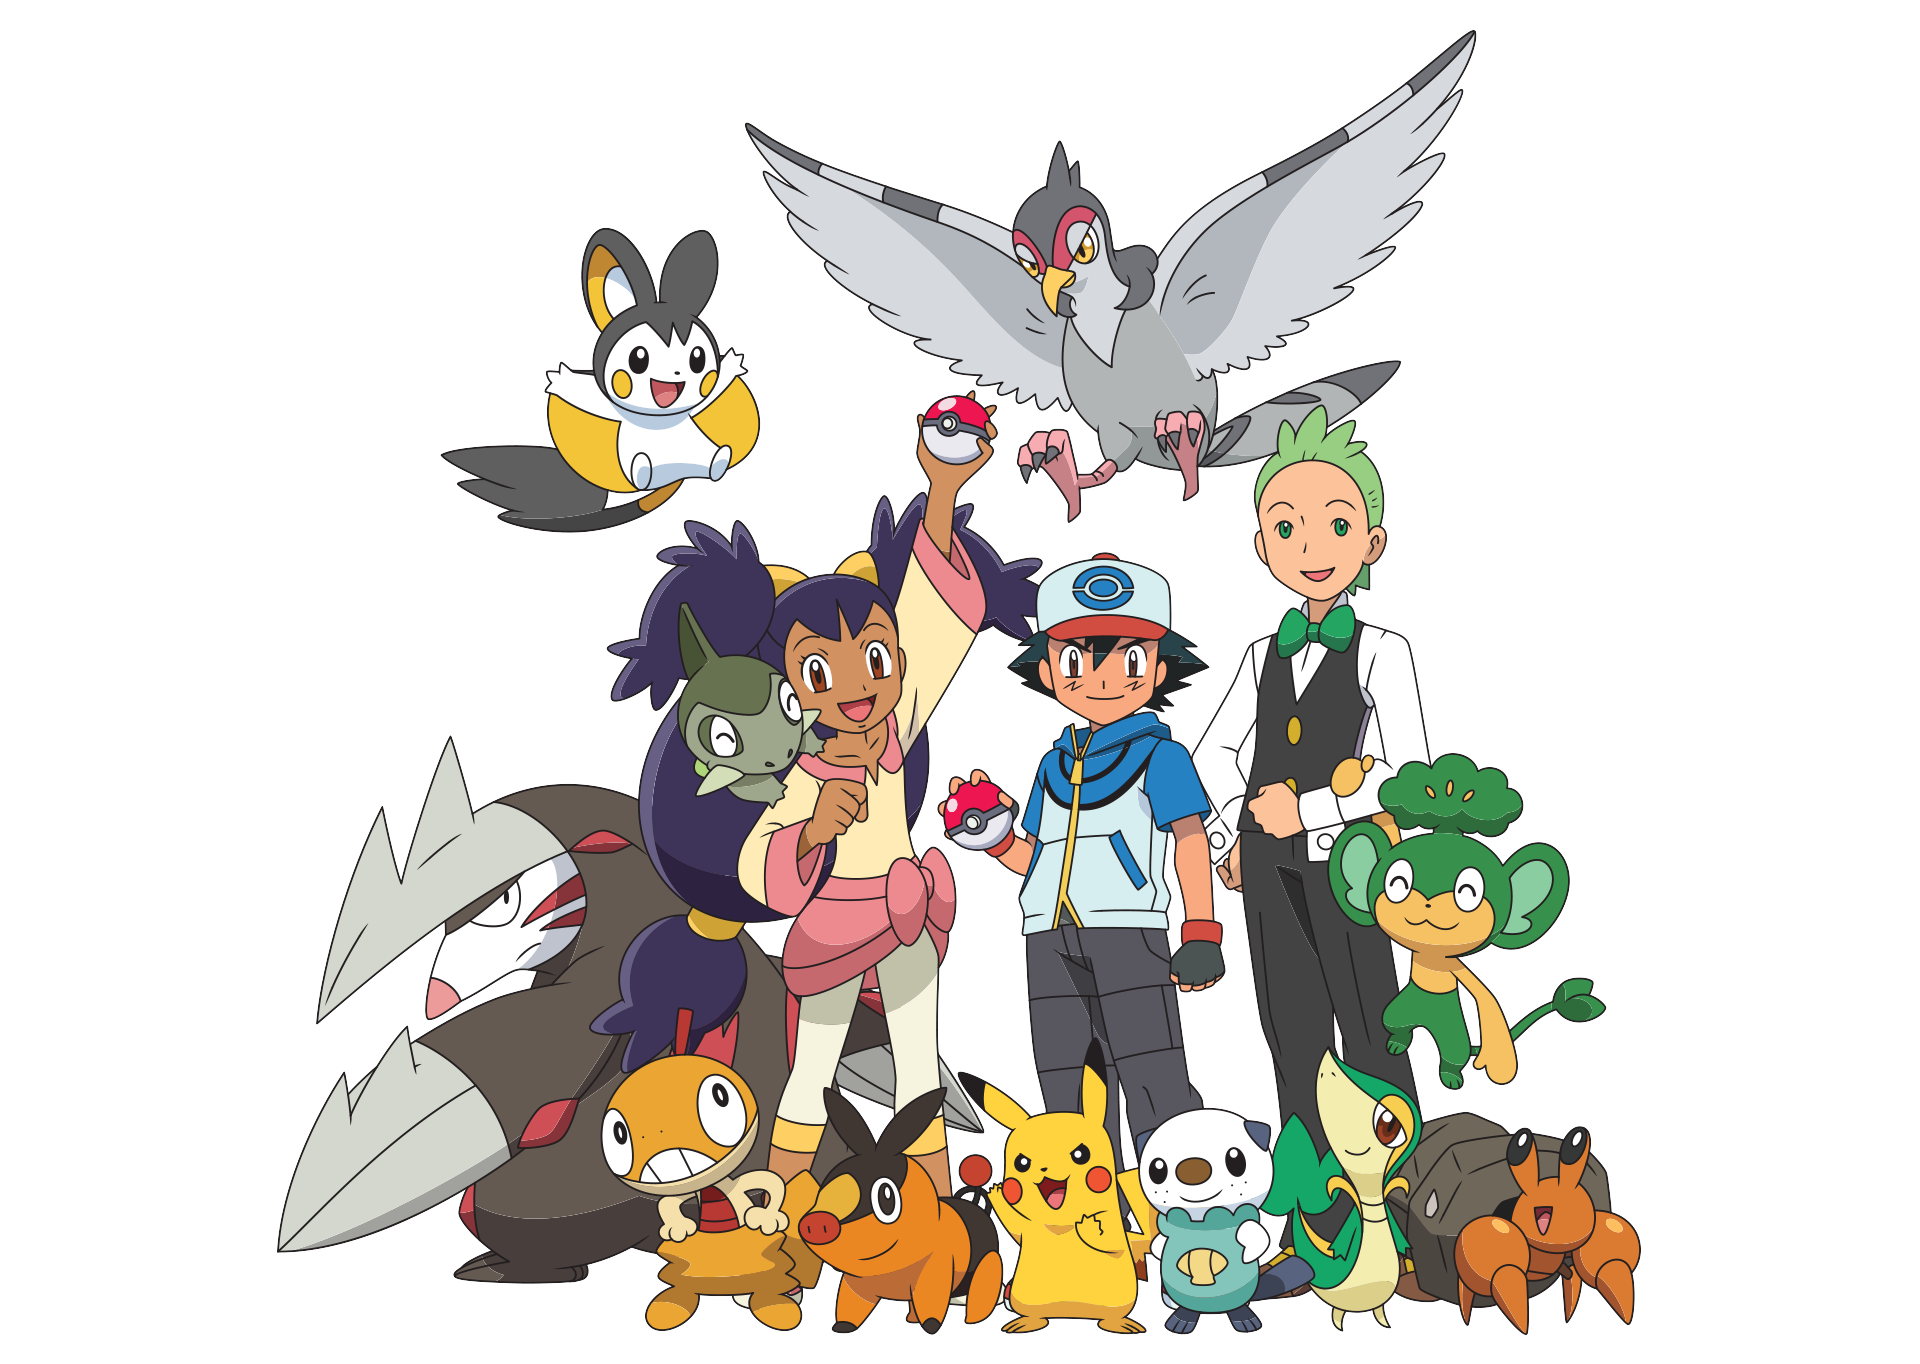 Lembrete: Pokémon: Black & White estreia Hoje no Cartoon Network